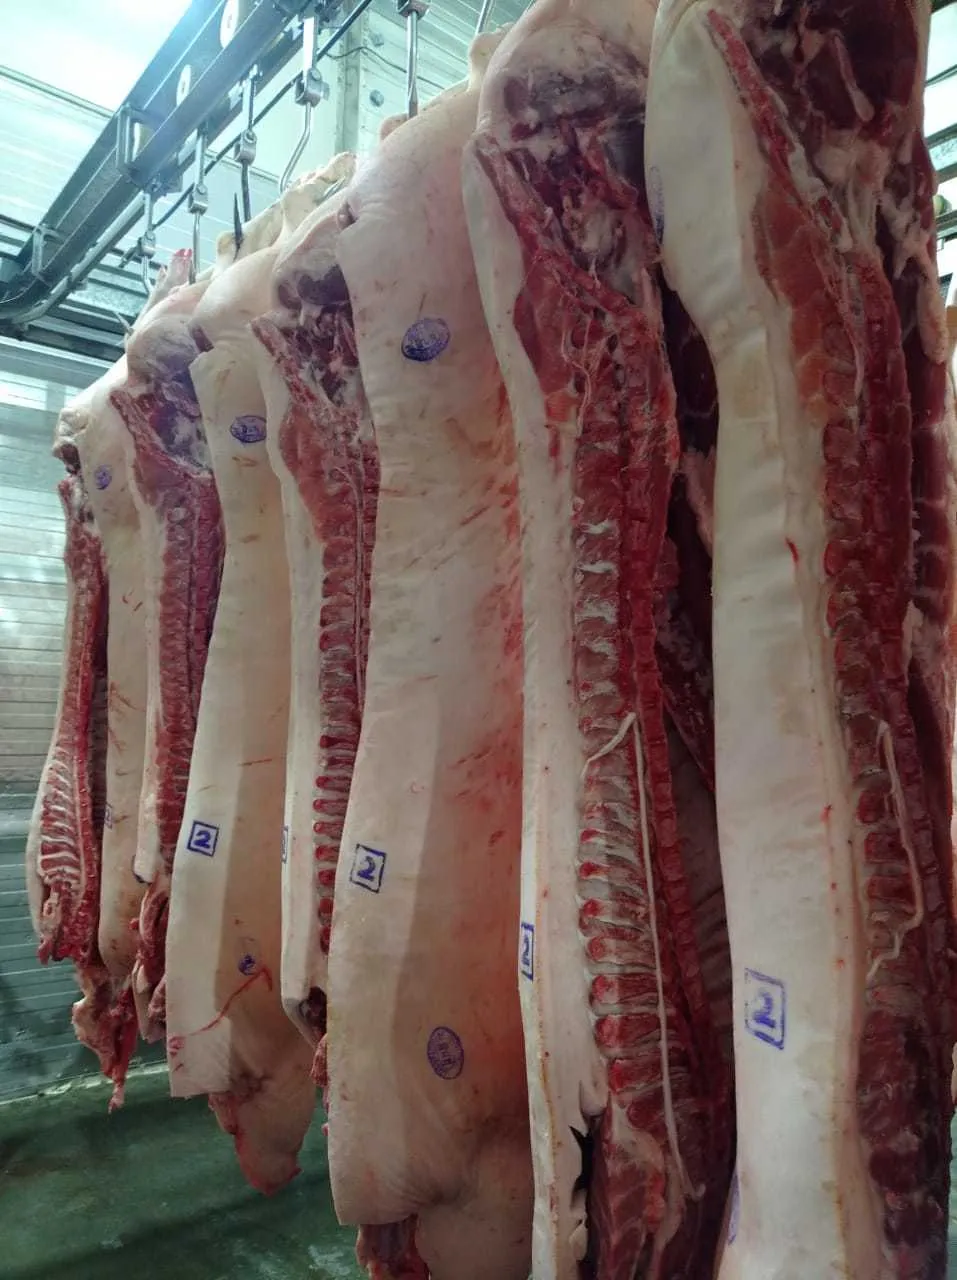  свинину охлажденную 194 руб. кг. в Владивостоке 3